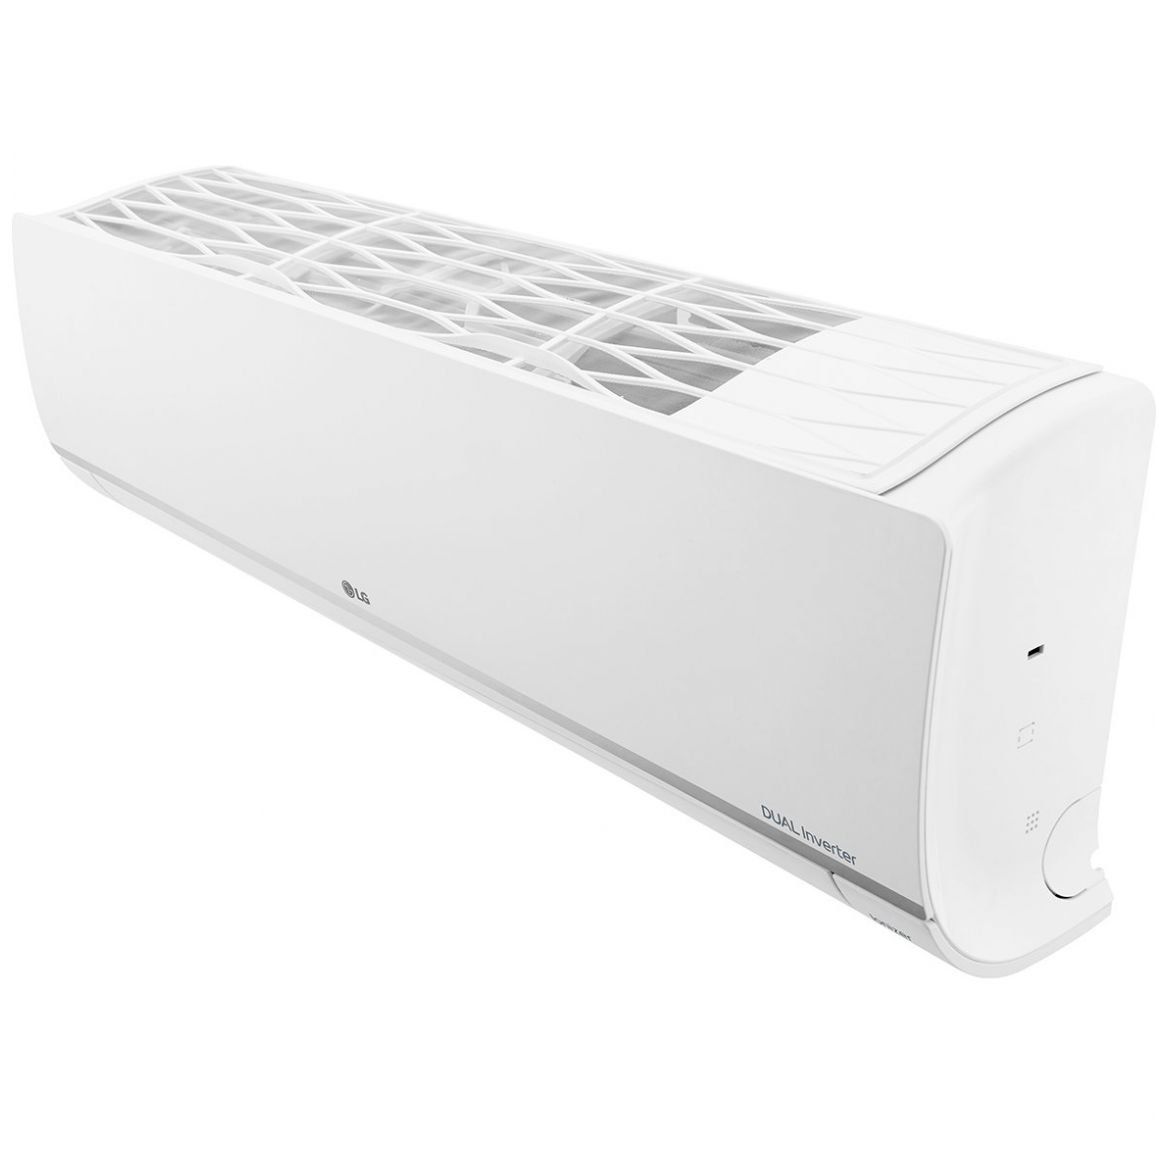 Aire Acondicionado LG Minisplit  Dual Inverter 18,000 Btu/h  Blanco  Vp182Cr